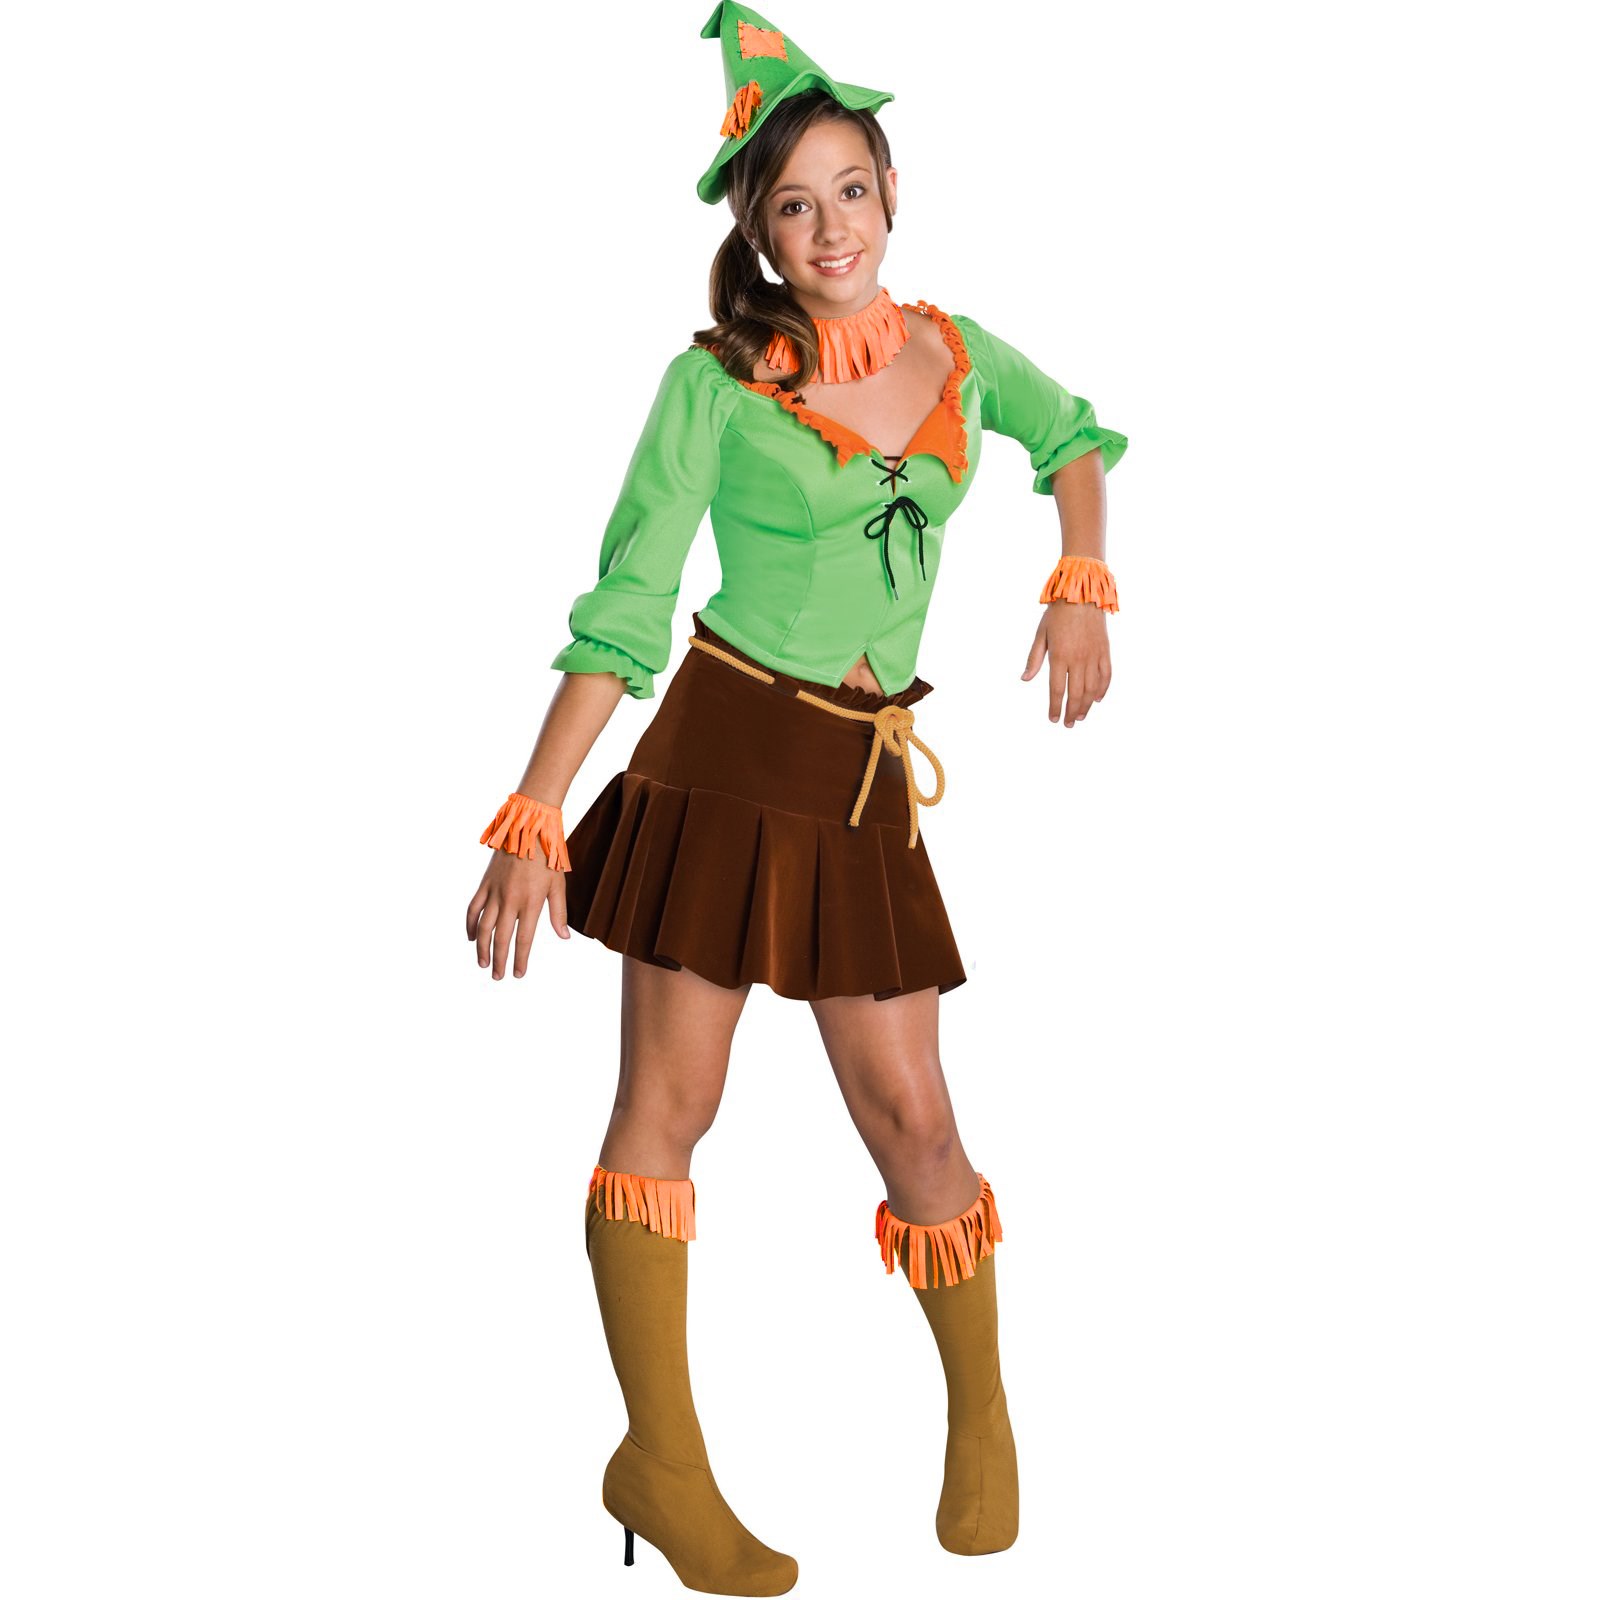 The Wizard of Oz Scarecrow Tween Costume